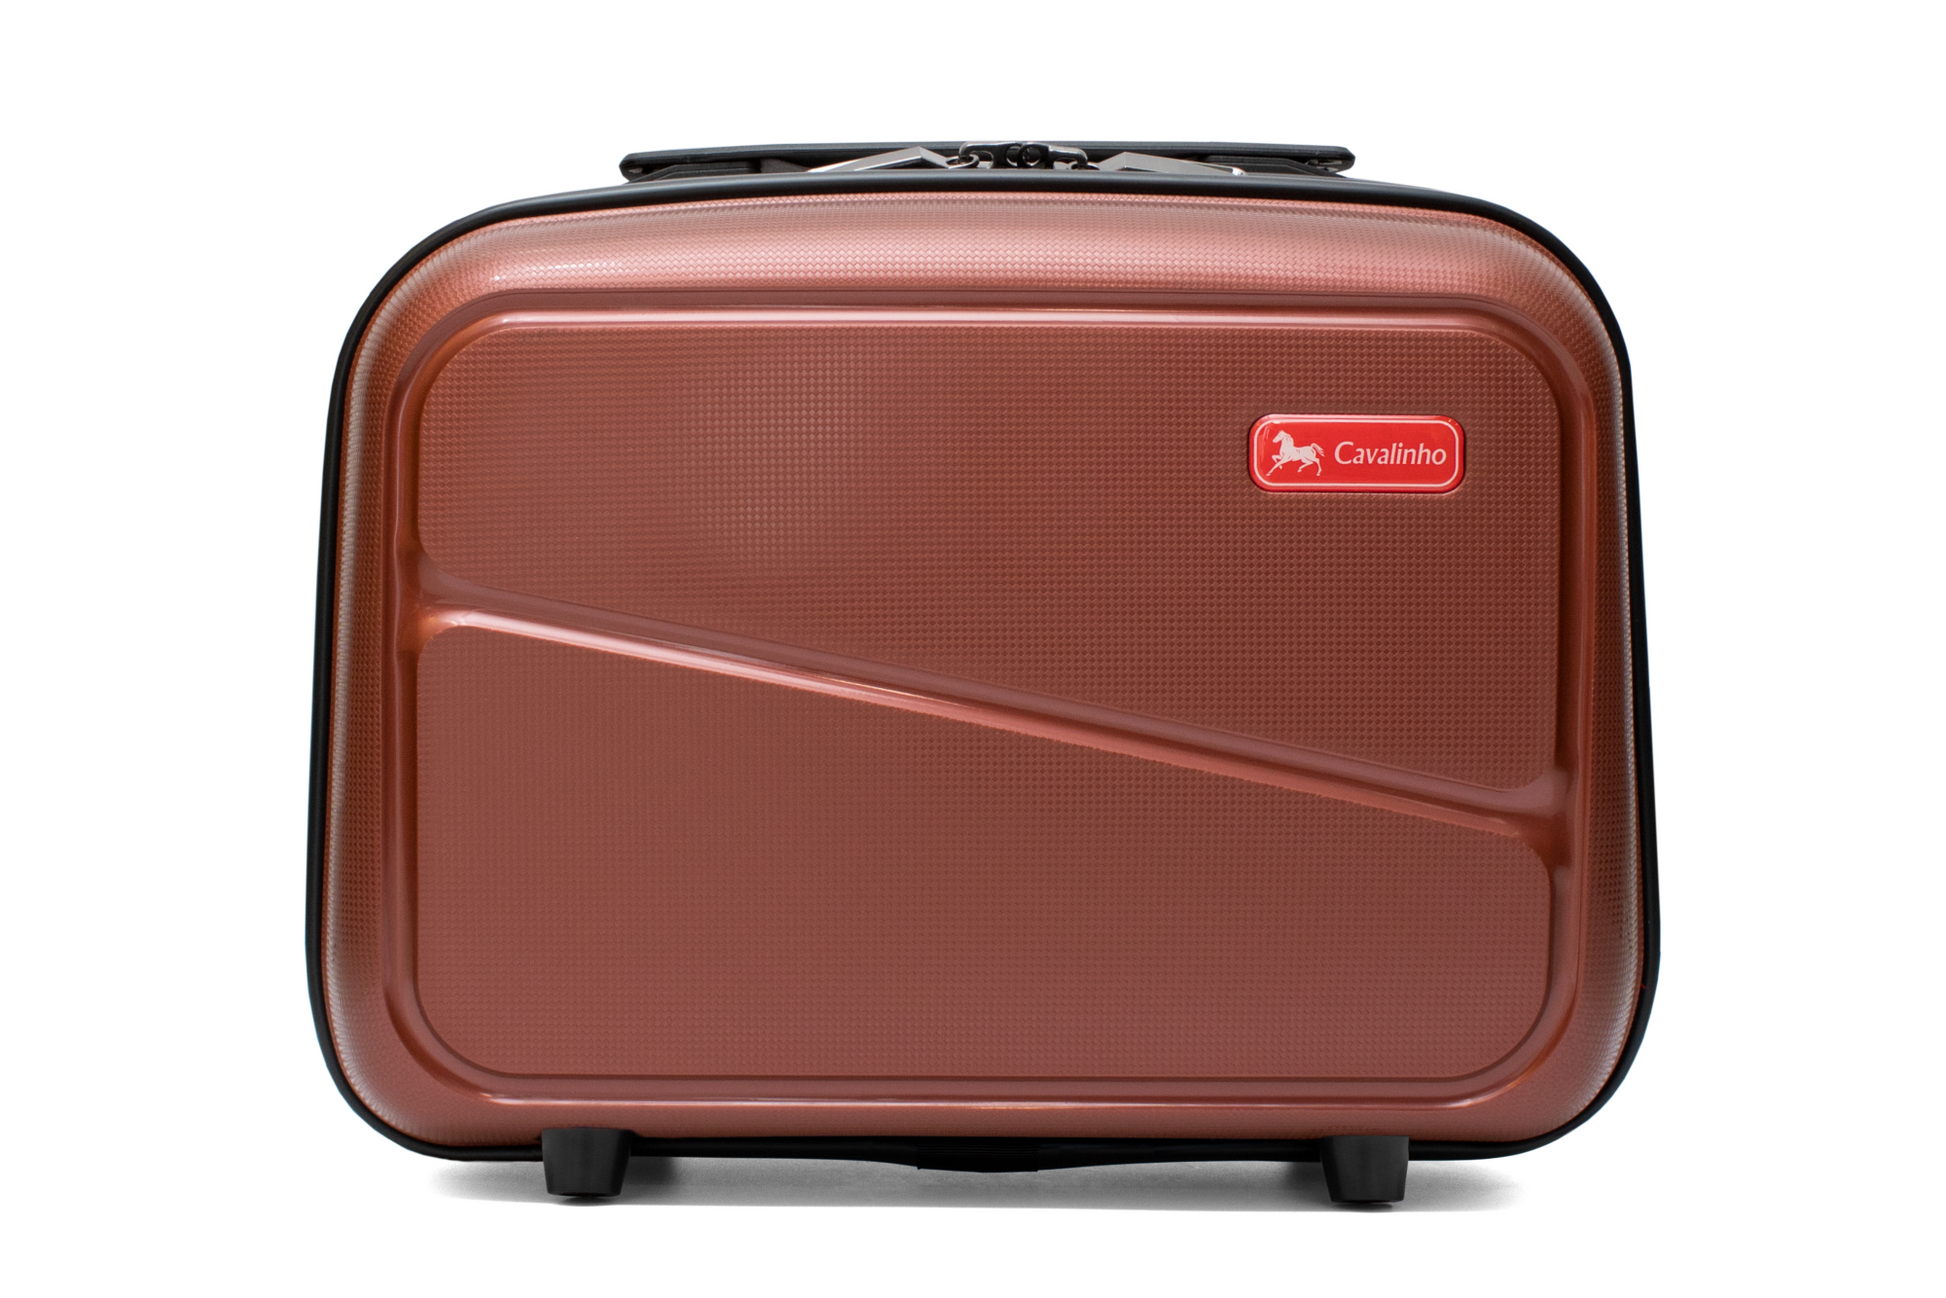 Cavalinho 3 Piece Hardside Luggage Set (14", 24" & 28") - 14 inch, 24 inch & 28 inch Set SteelBlue - 68010003.24.14_1S_f7bf01b6-b8a0-4b02-b8a6-4368ff6b7134